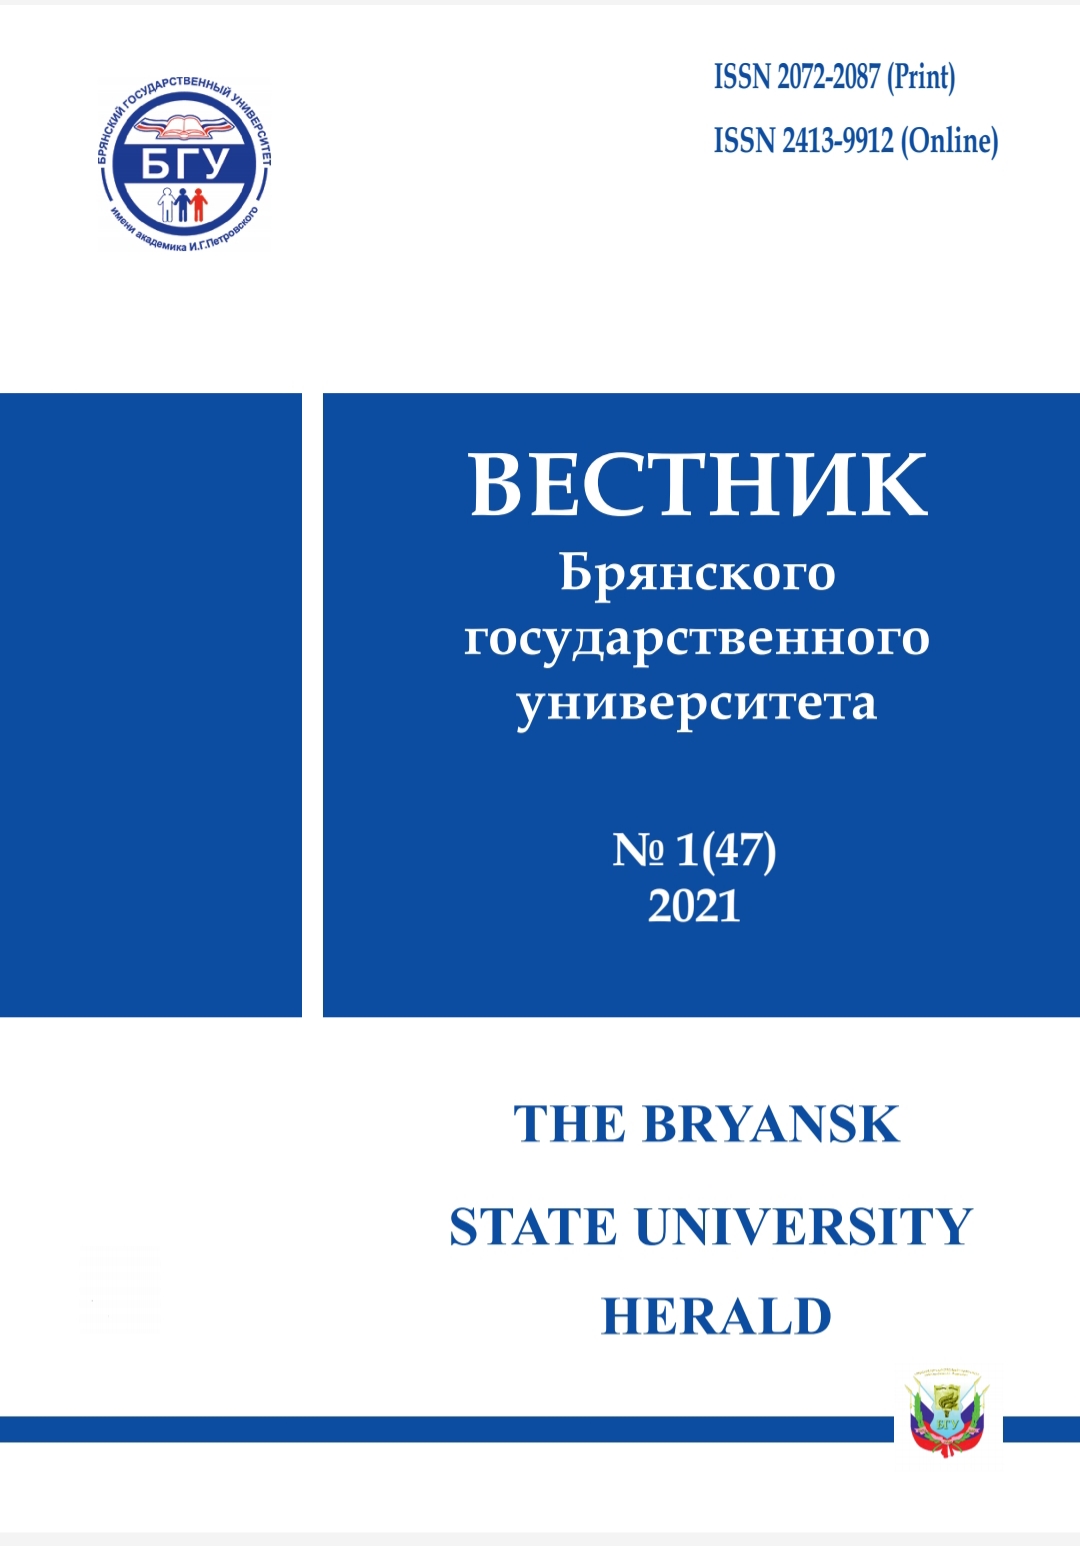 Вышел в свет первый номер журнала   «Вестник Брянского государственного университета» за 2021 год